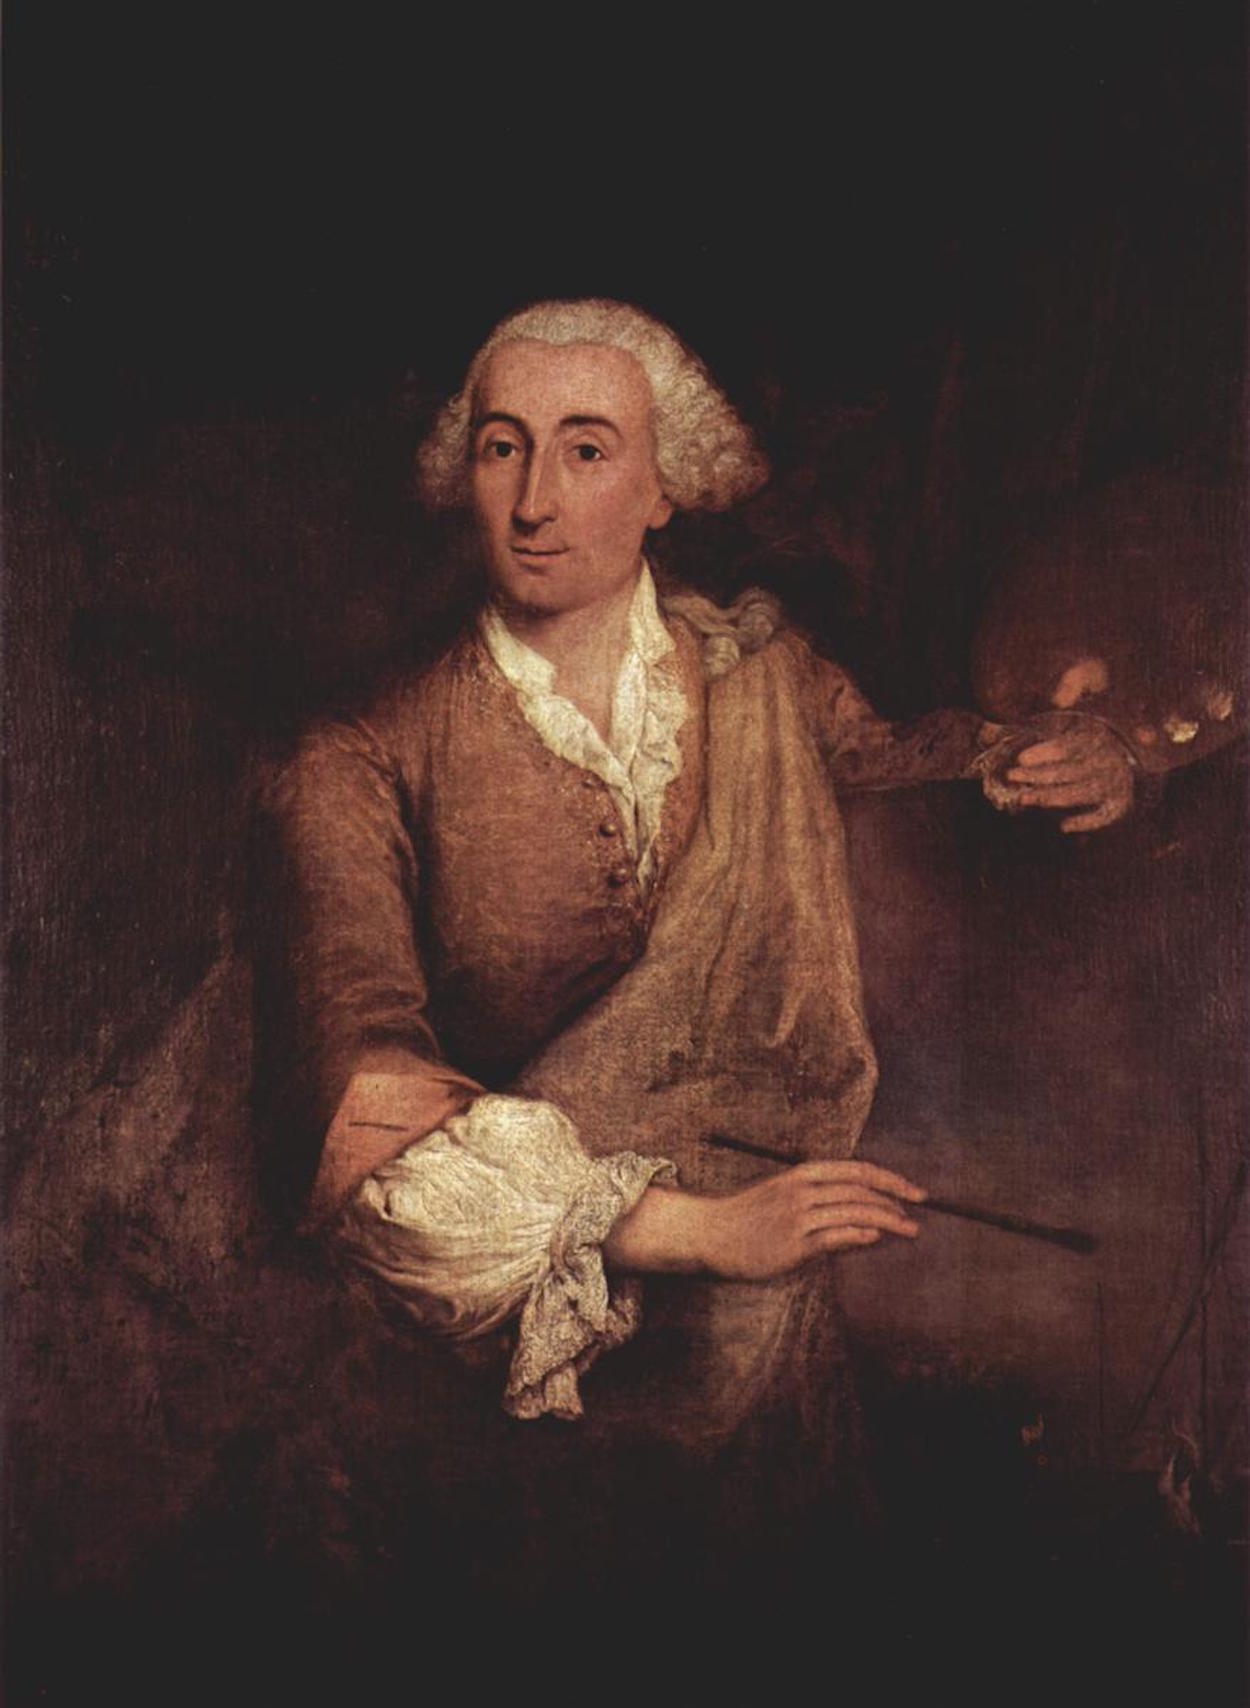 Francesco Guardi - 5 de Outubro, 1712 - 1 de Janeiro, 1793